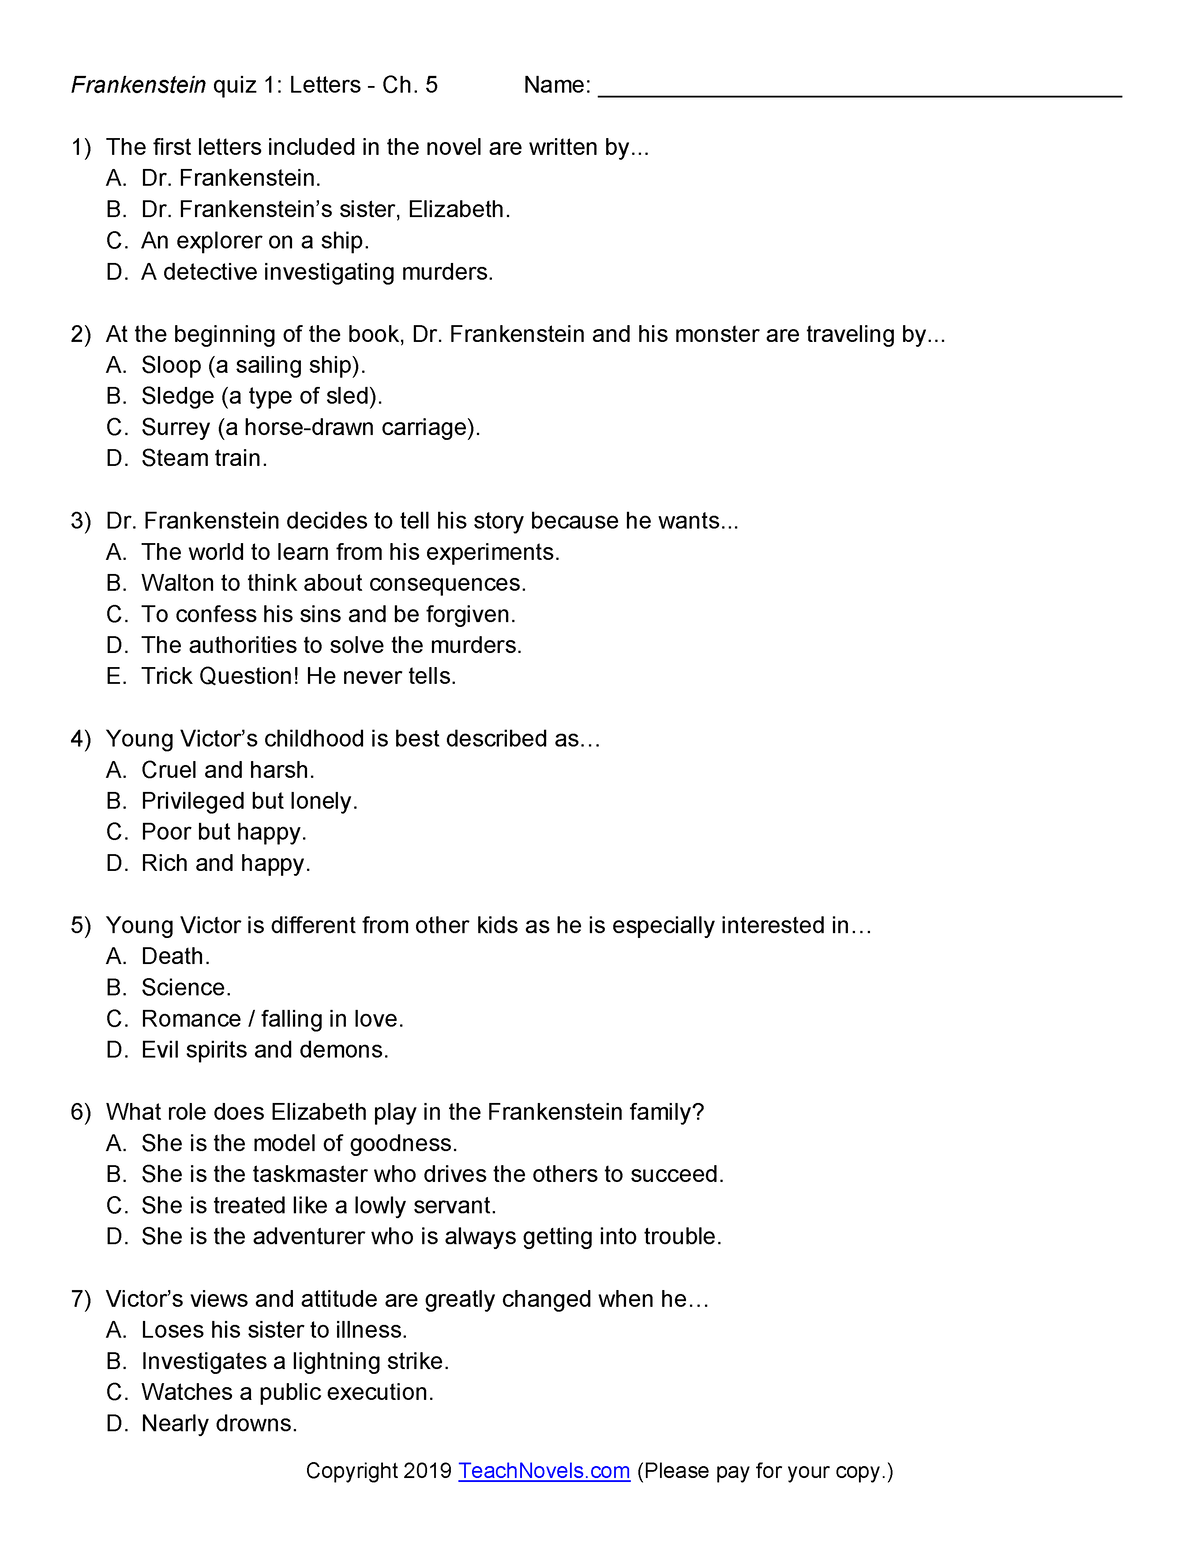 Frankenstein Reading Quizzes (list view) - Frankenstein quiz 1: Letters ...